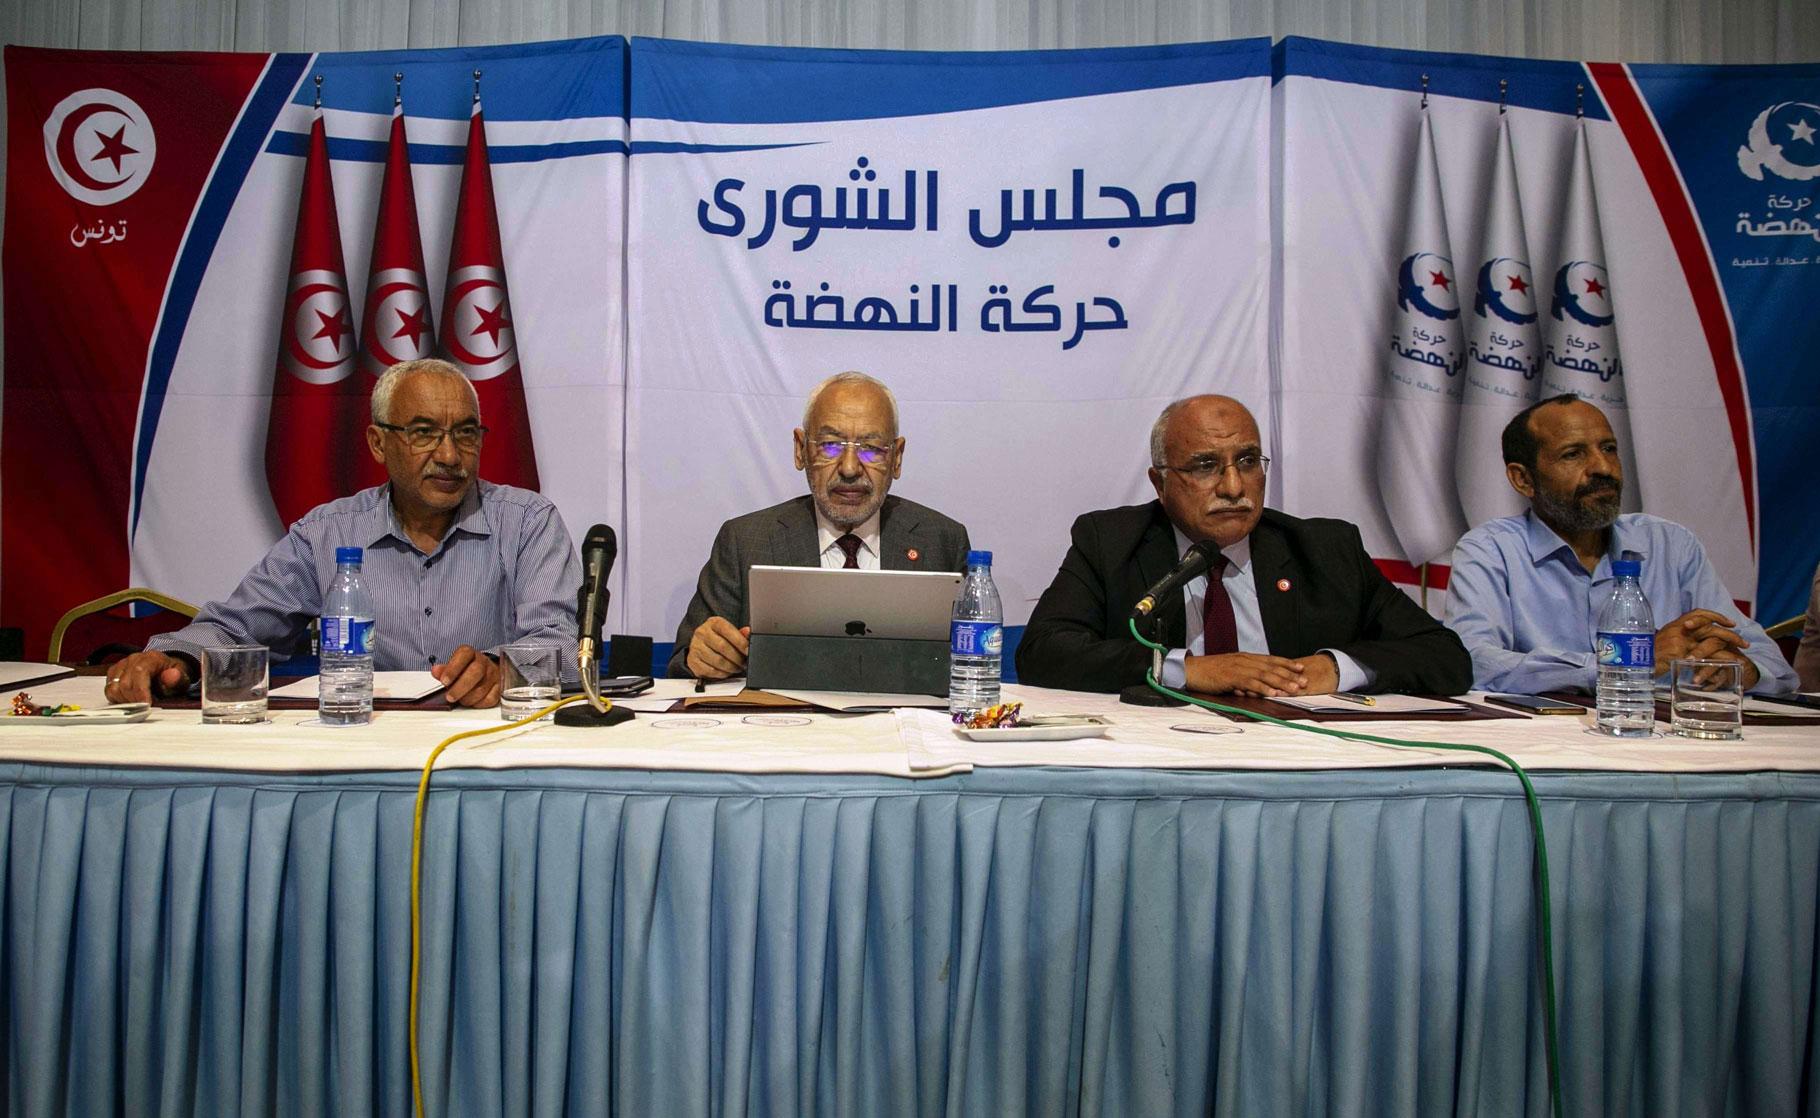 في تصويت حماسي: أغلبية شورى النهضة مع حكومة وحدة وطنية أو انتخابات مبكّرة